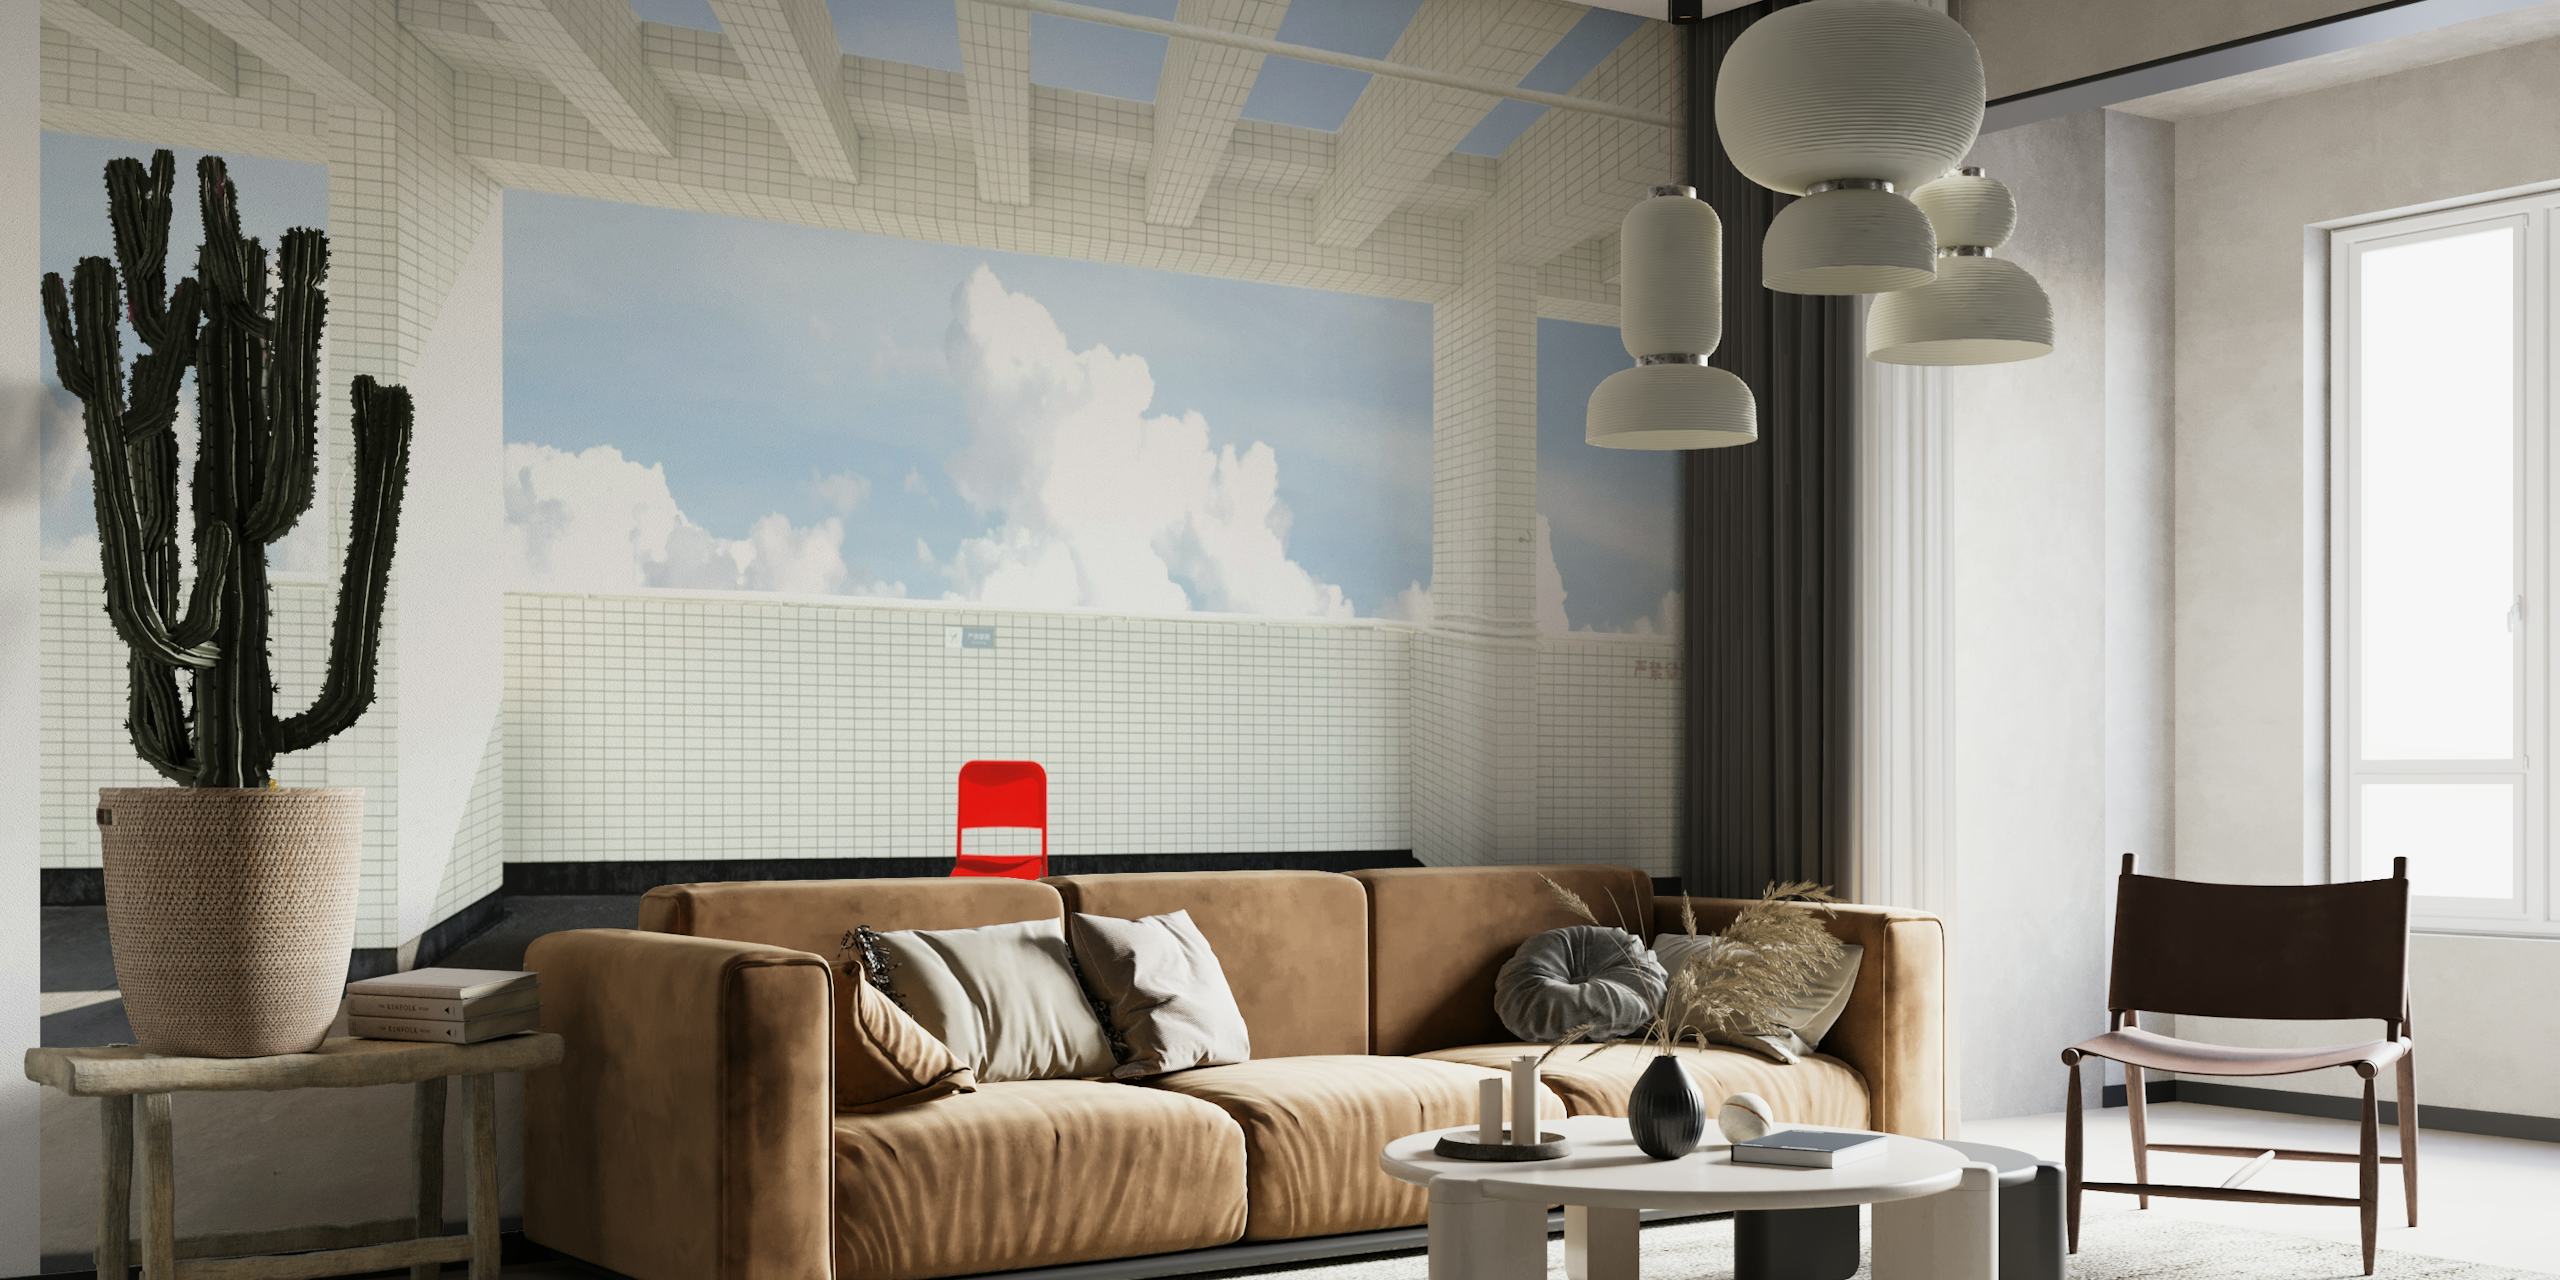 Minimalistisches Wandbild mit einem roten Stuhl vor einem ruhigen Himmelshintergrund